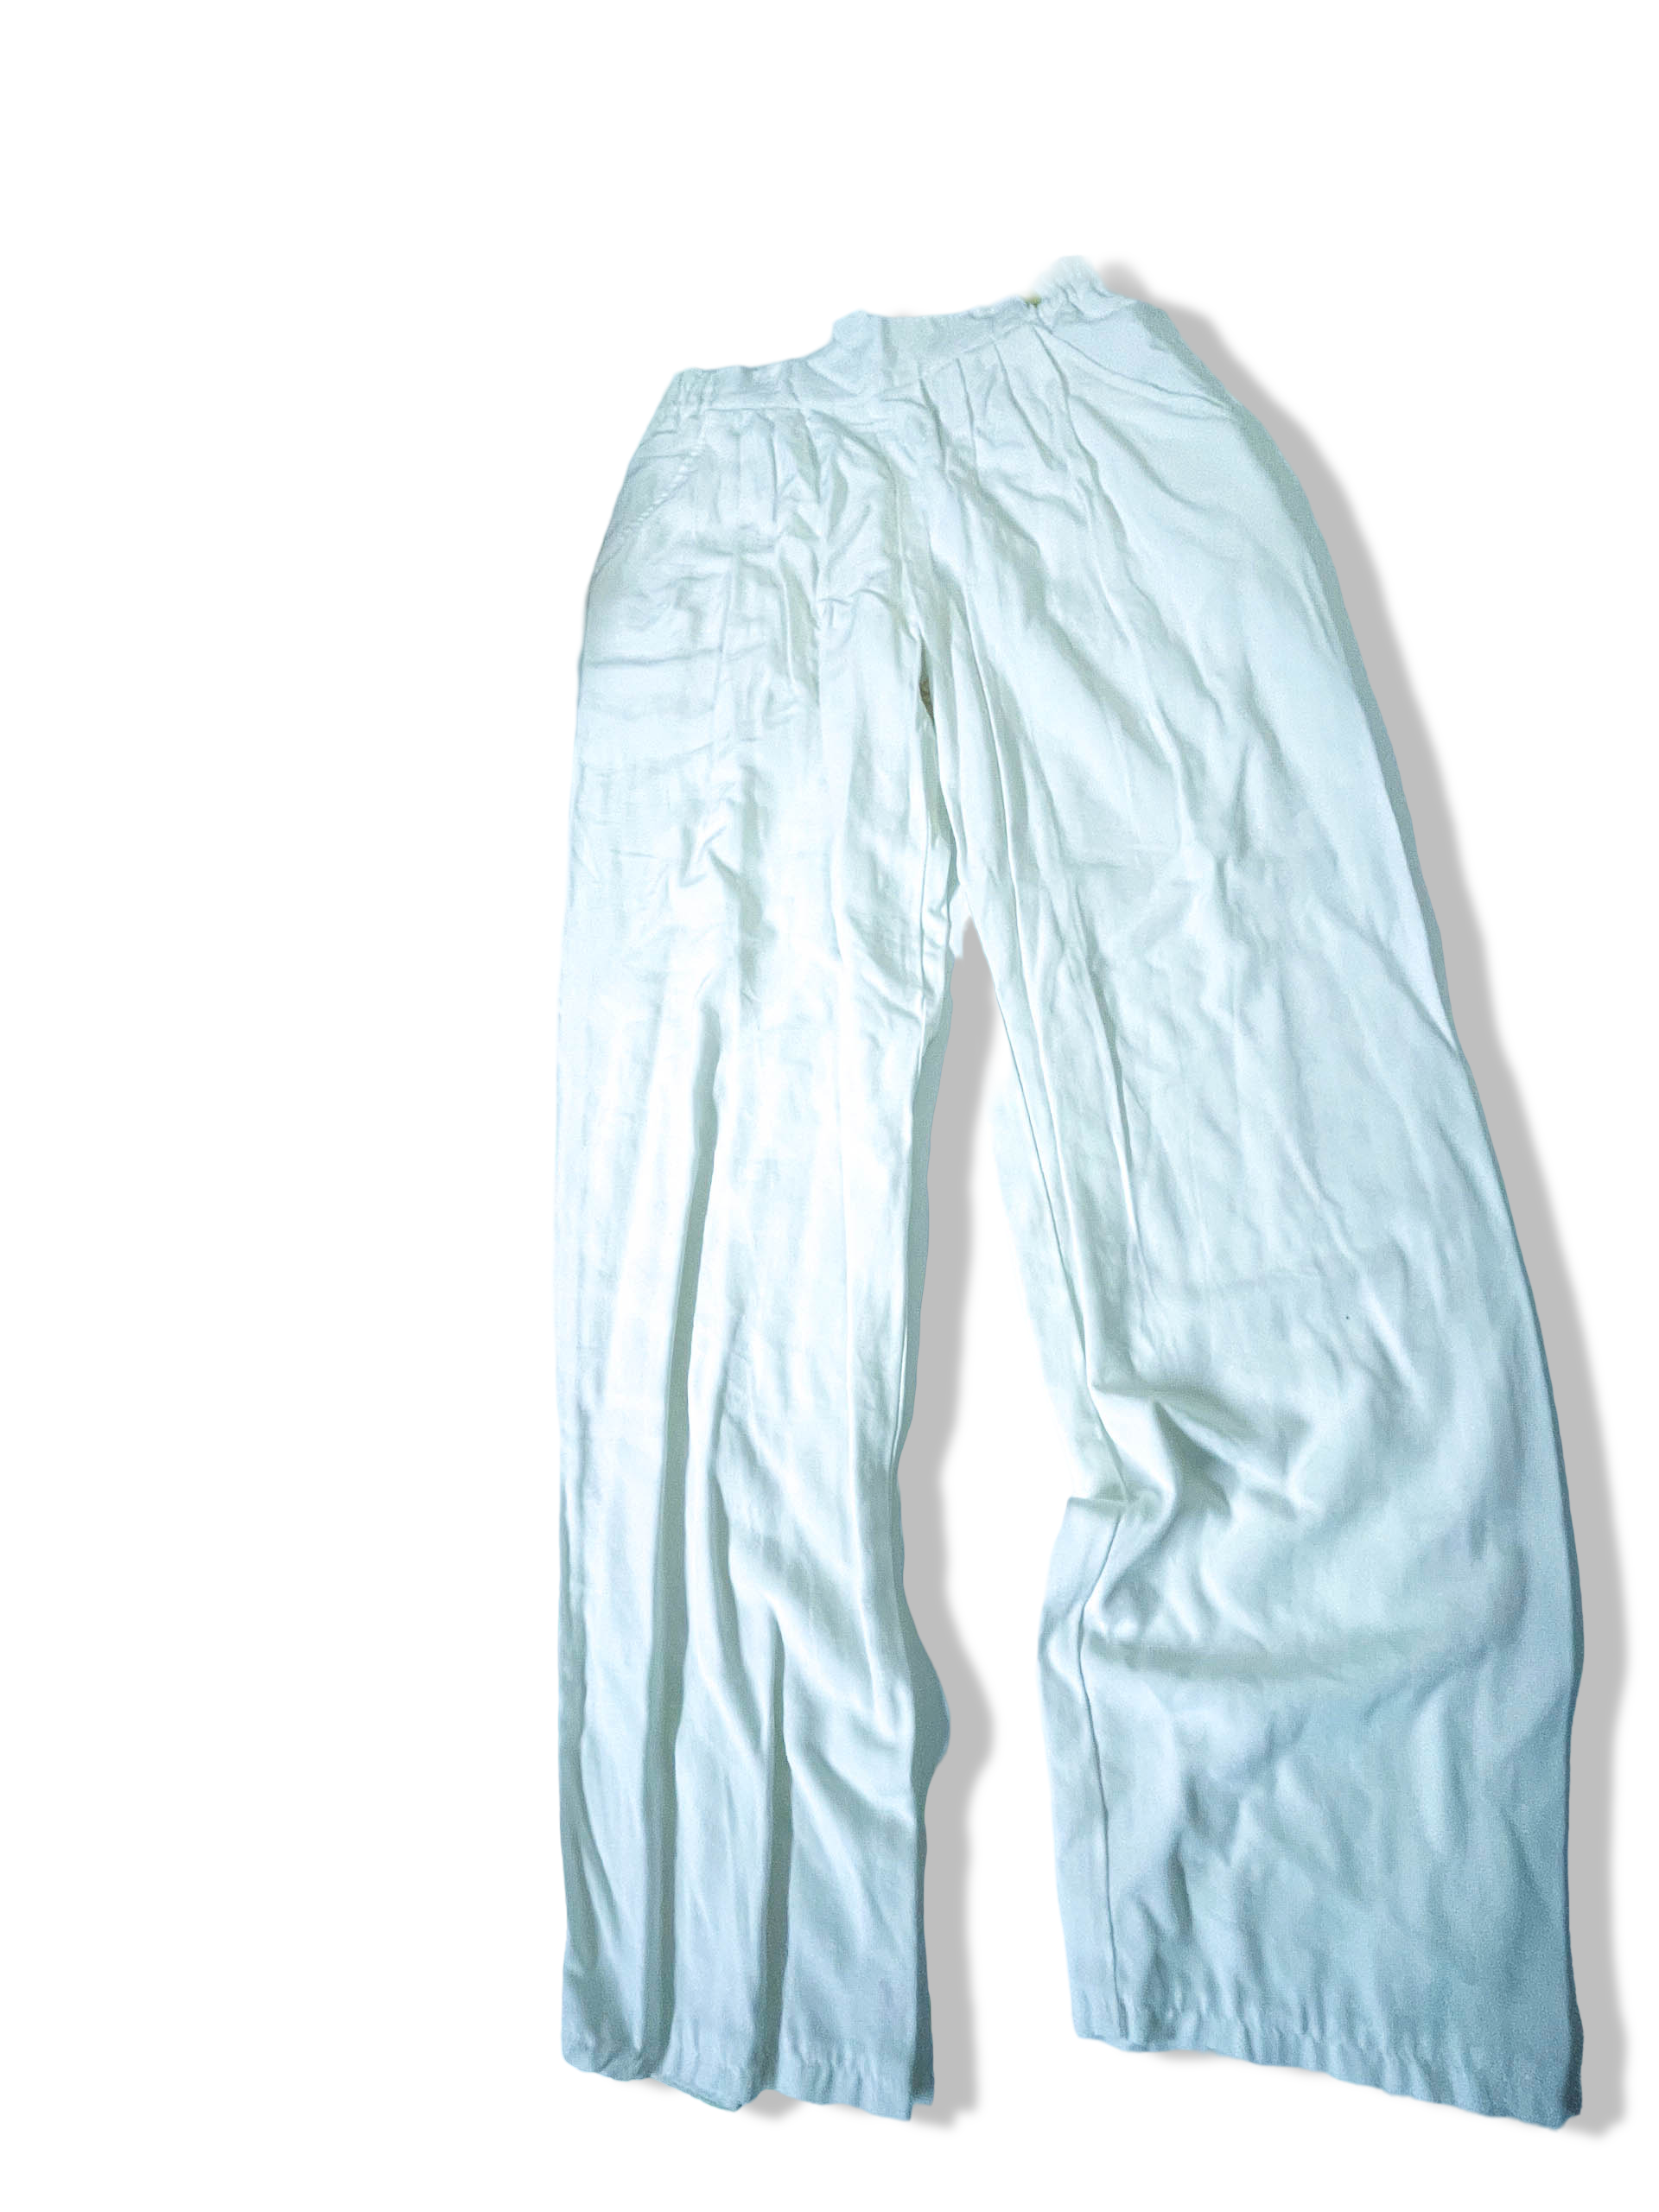 Vintage women's white wide leg trouser size 38|L27 W26| SKU 3961